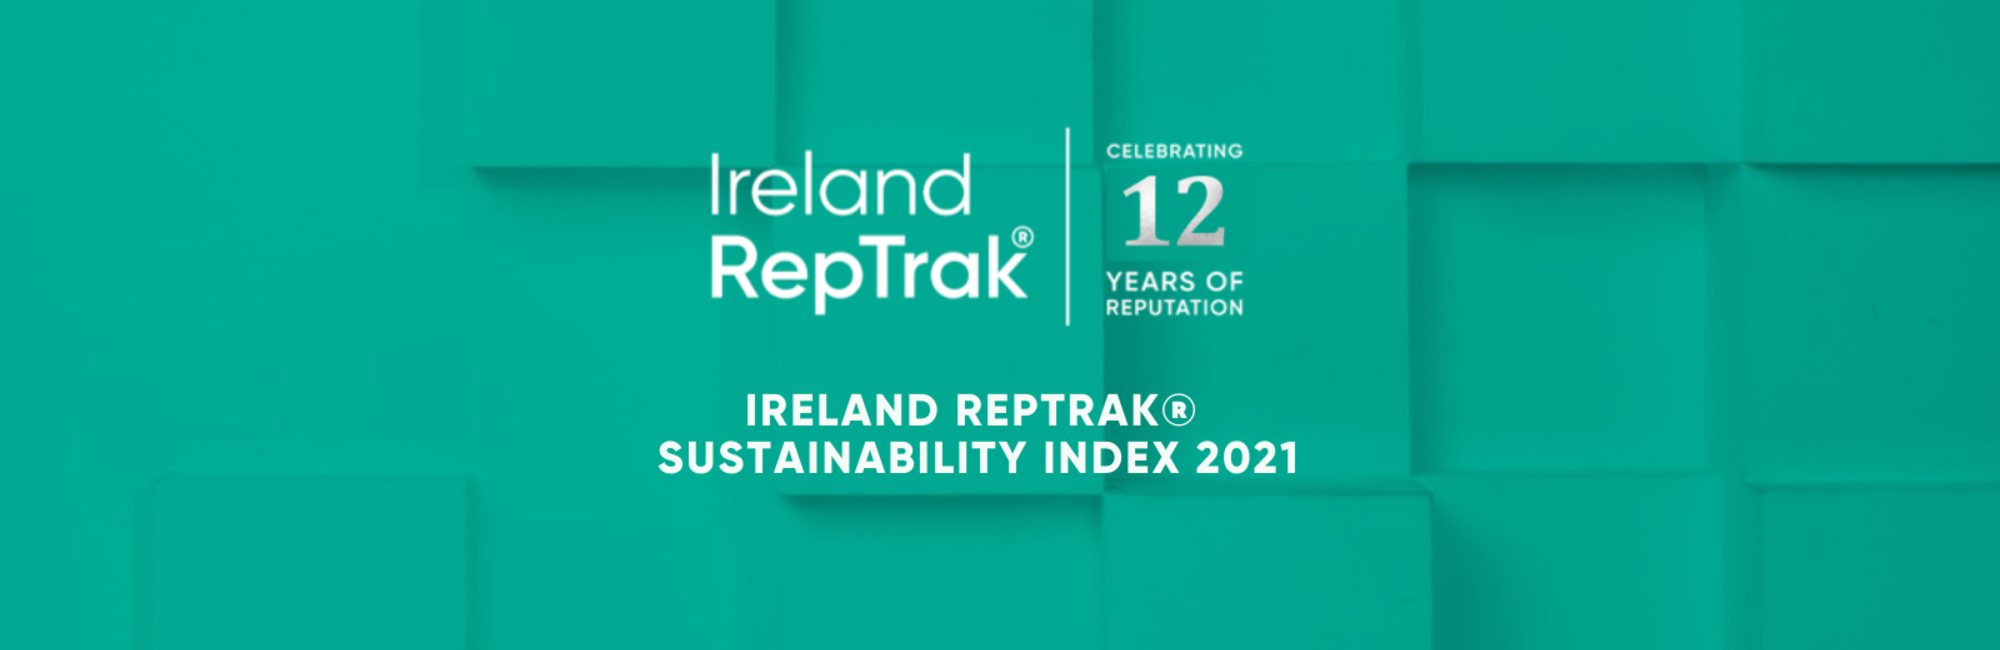 IRELAND 20REPTRAK C2 AE 20SUSTAINABILITY 20INDEX 202021